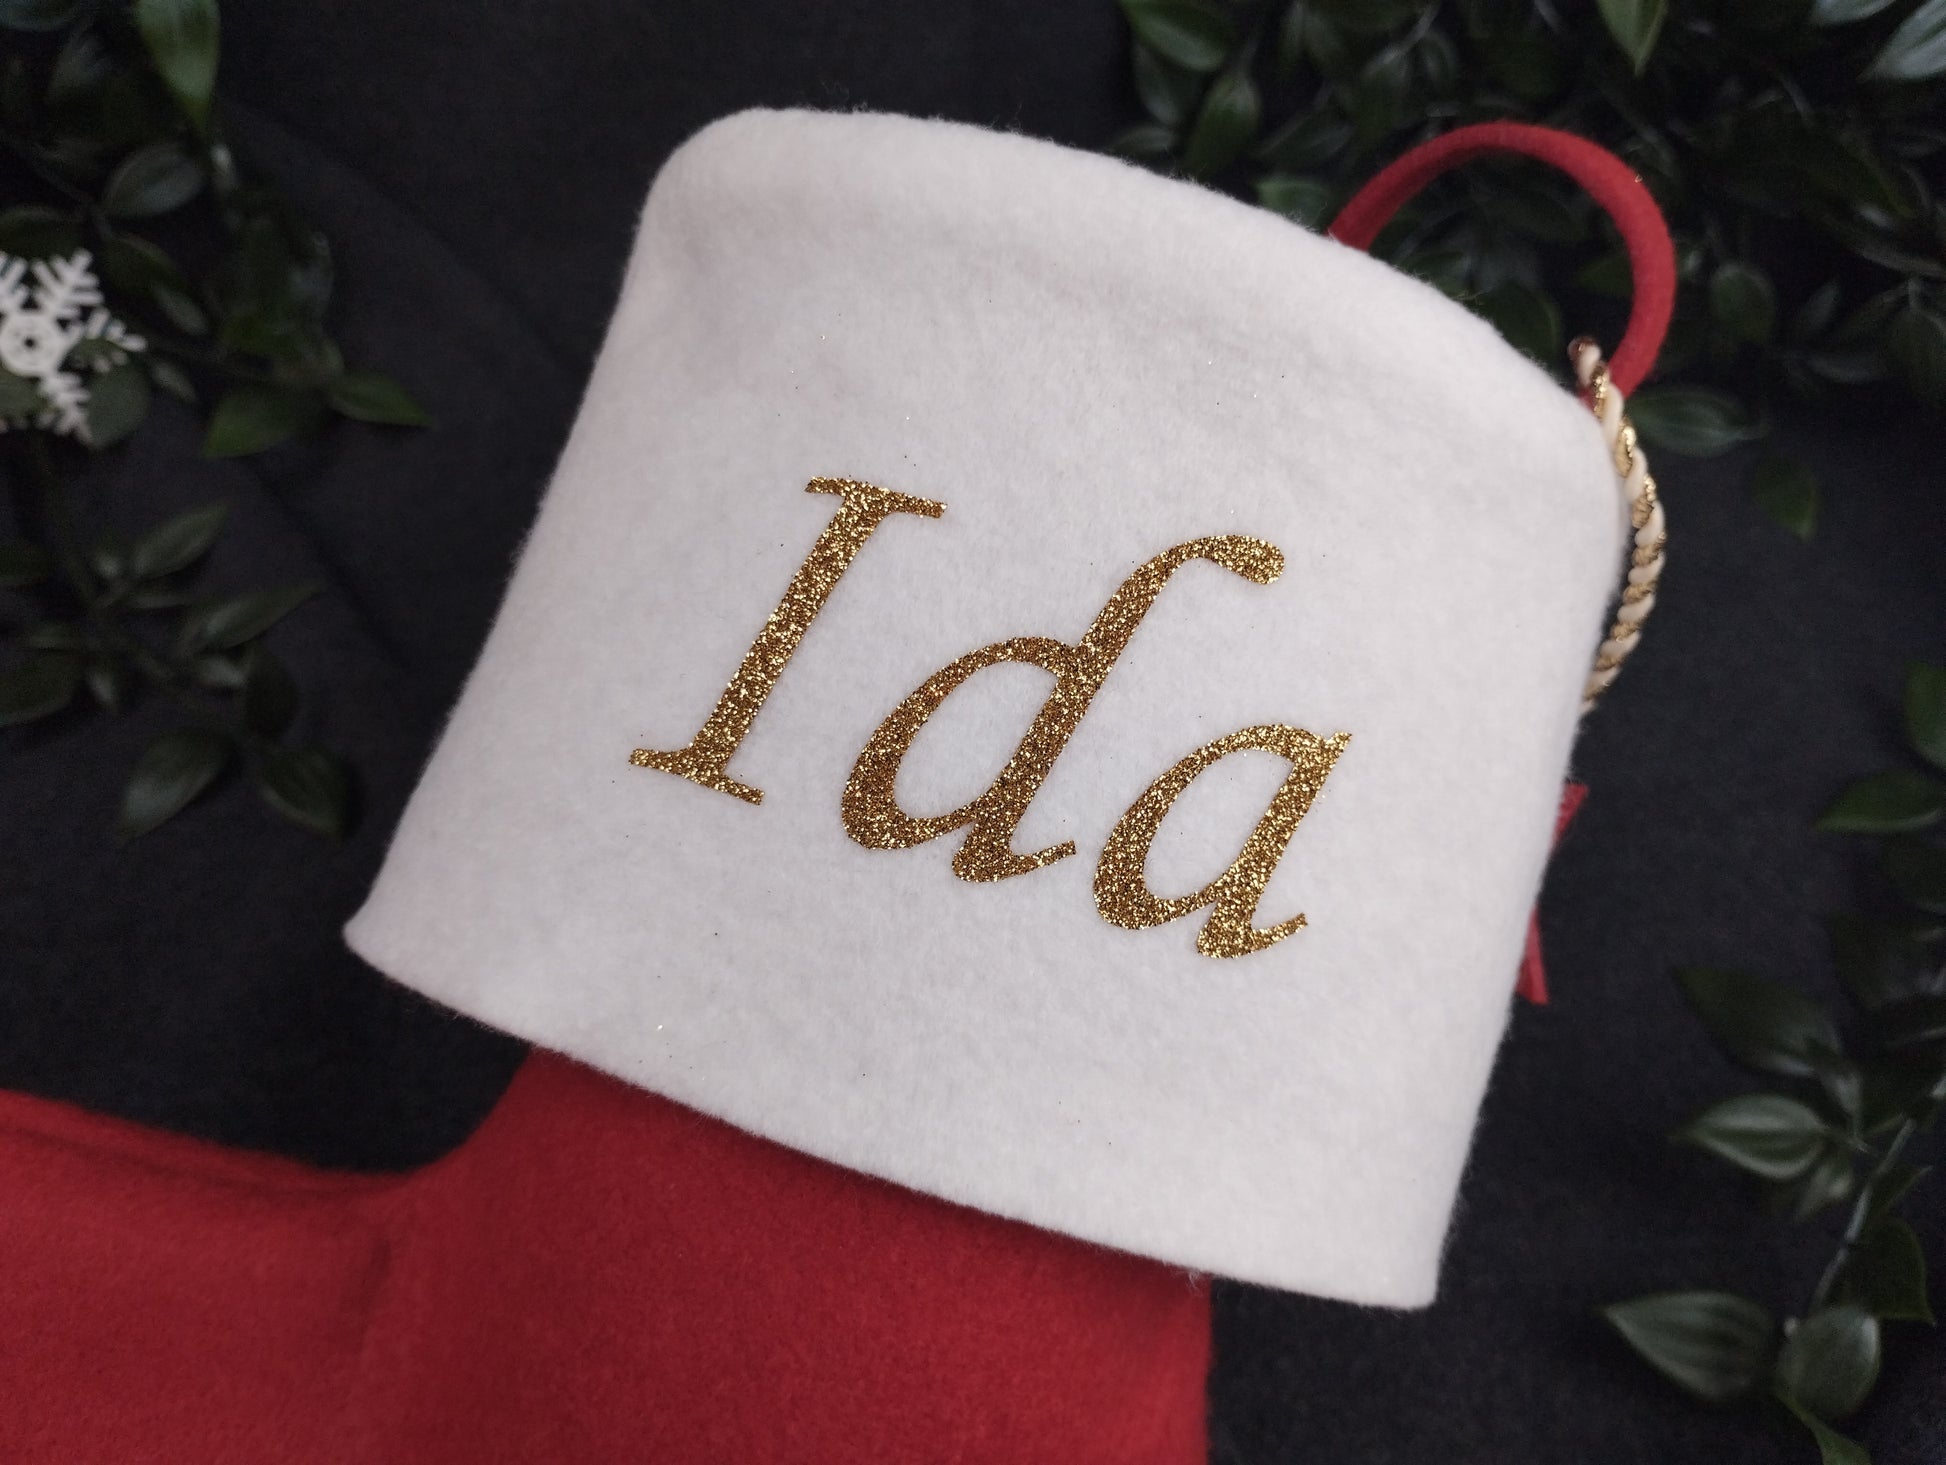 Nikolaussocken mit Glitzerschrift in Gold auf einem roten Nikolaussocken mit weißer Stulpe